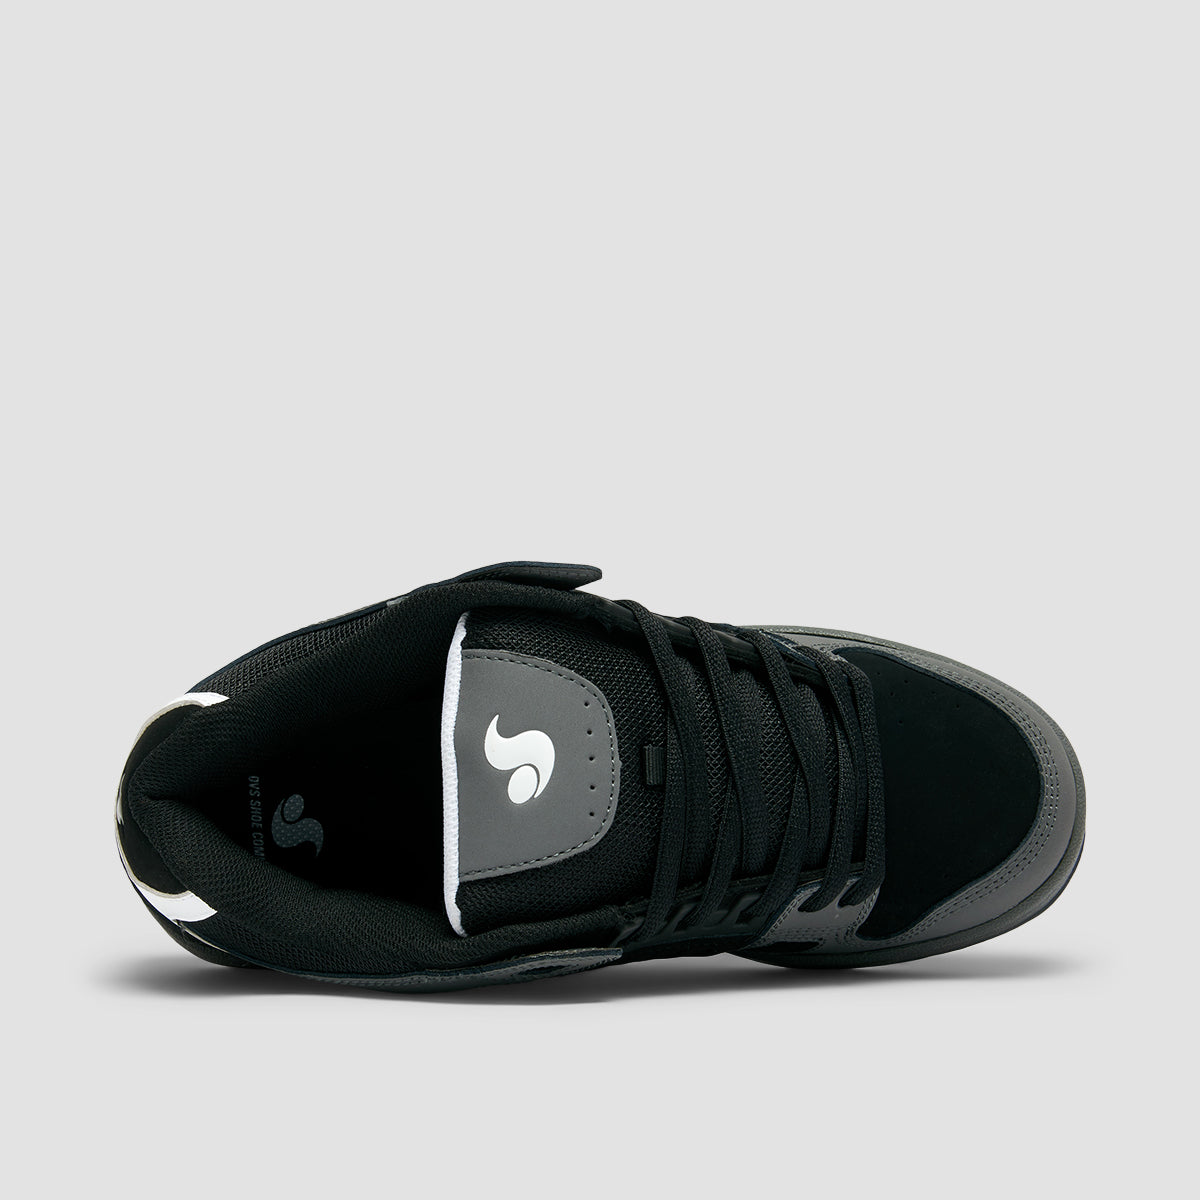 DVS Celsius Shoes - Charcoal/Black/White Nubuck